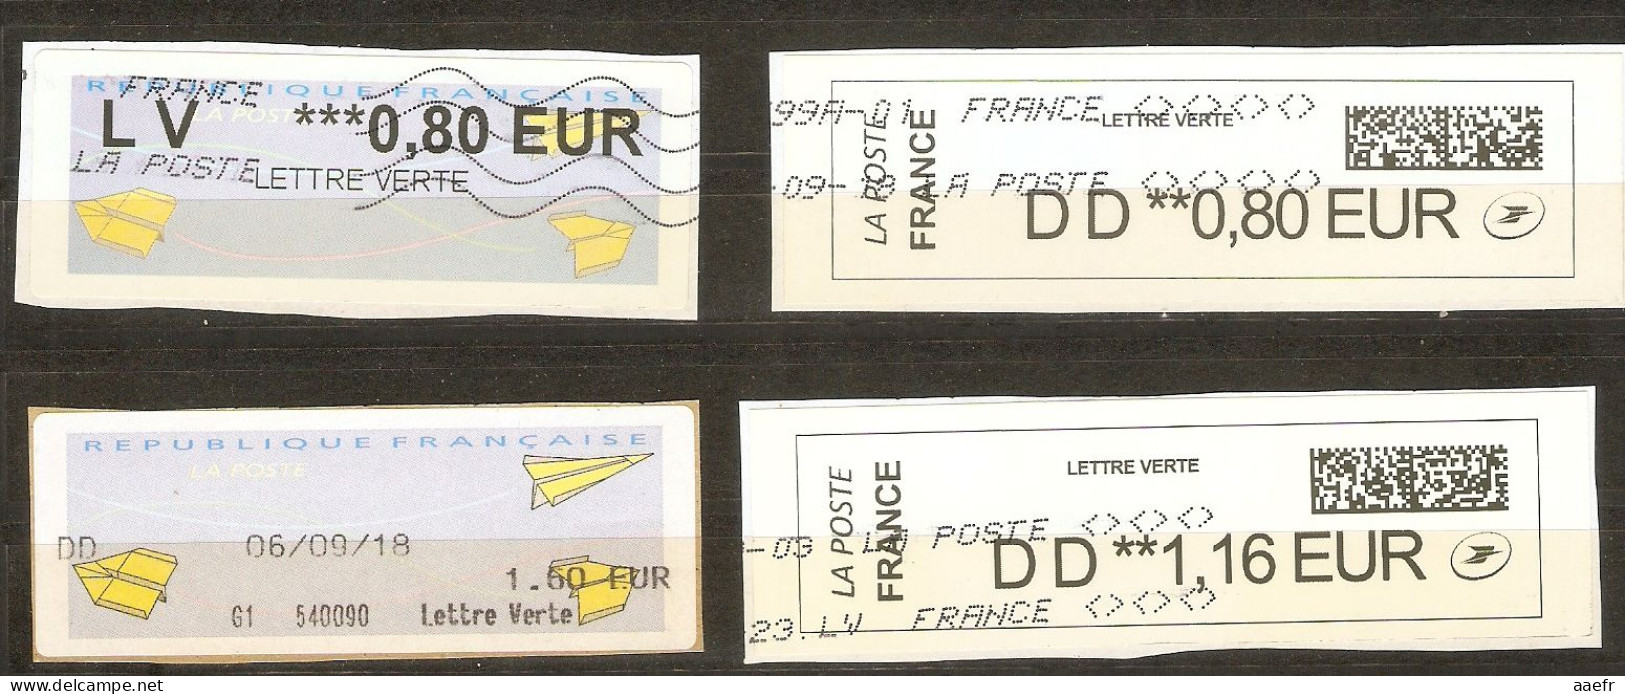 France -  Petit Lot De 4 Vignettes ATM Type Avions En Papier - Lettres Vertes - 3 DD + 1 LV - 2 QR Codes - 2000 « Avions En Papier »